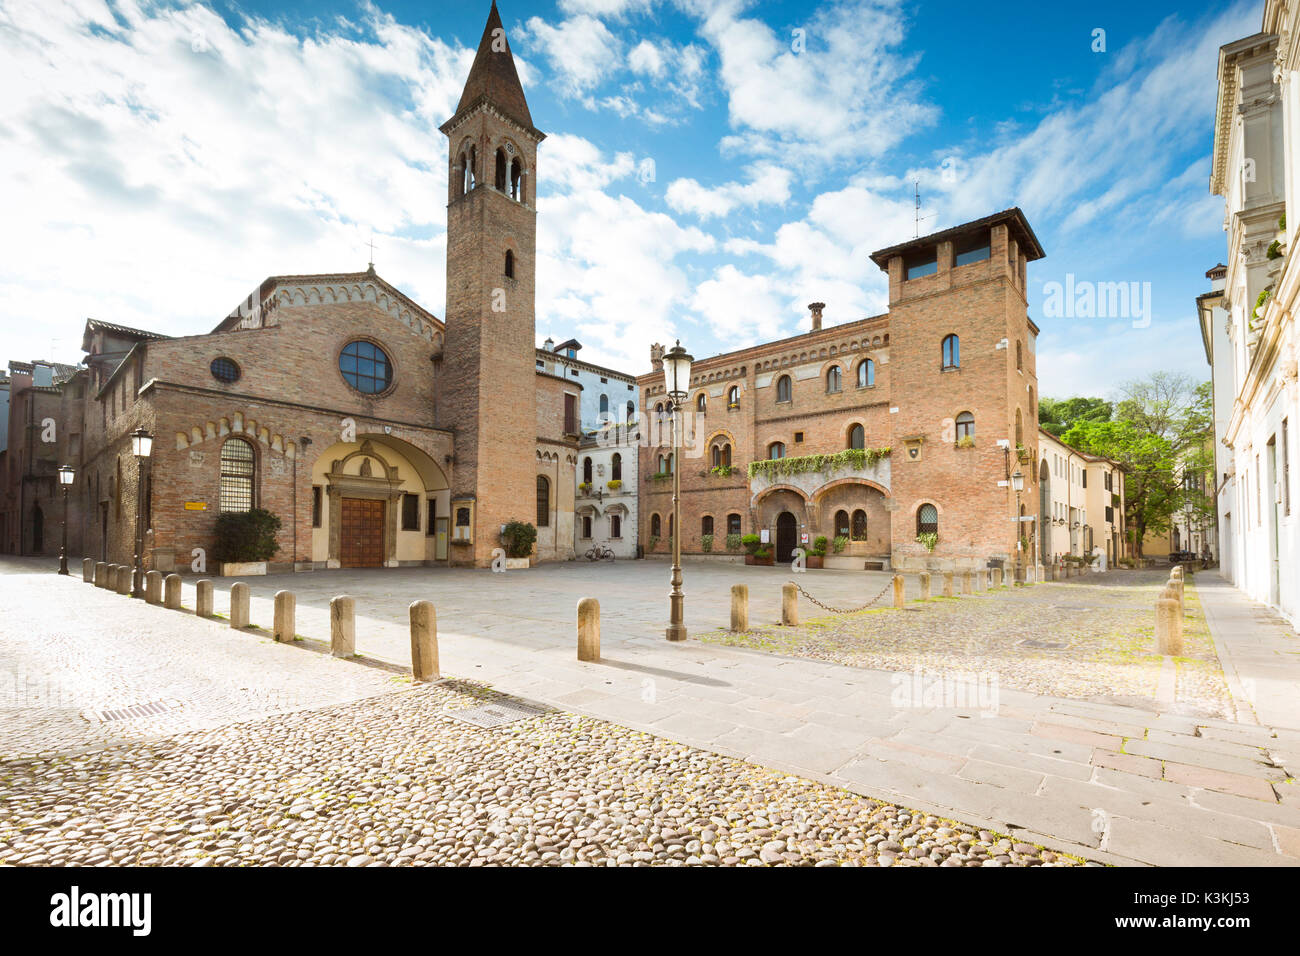 Ein Blick auf die St. Nicolò Square, einem wunderschönen kleinen Platz im Zentrum von Padua mit der St. Nikolaus Kirche im Hintergrund, Provinz Padua, Venetien, Italien, Europa Stockfoto